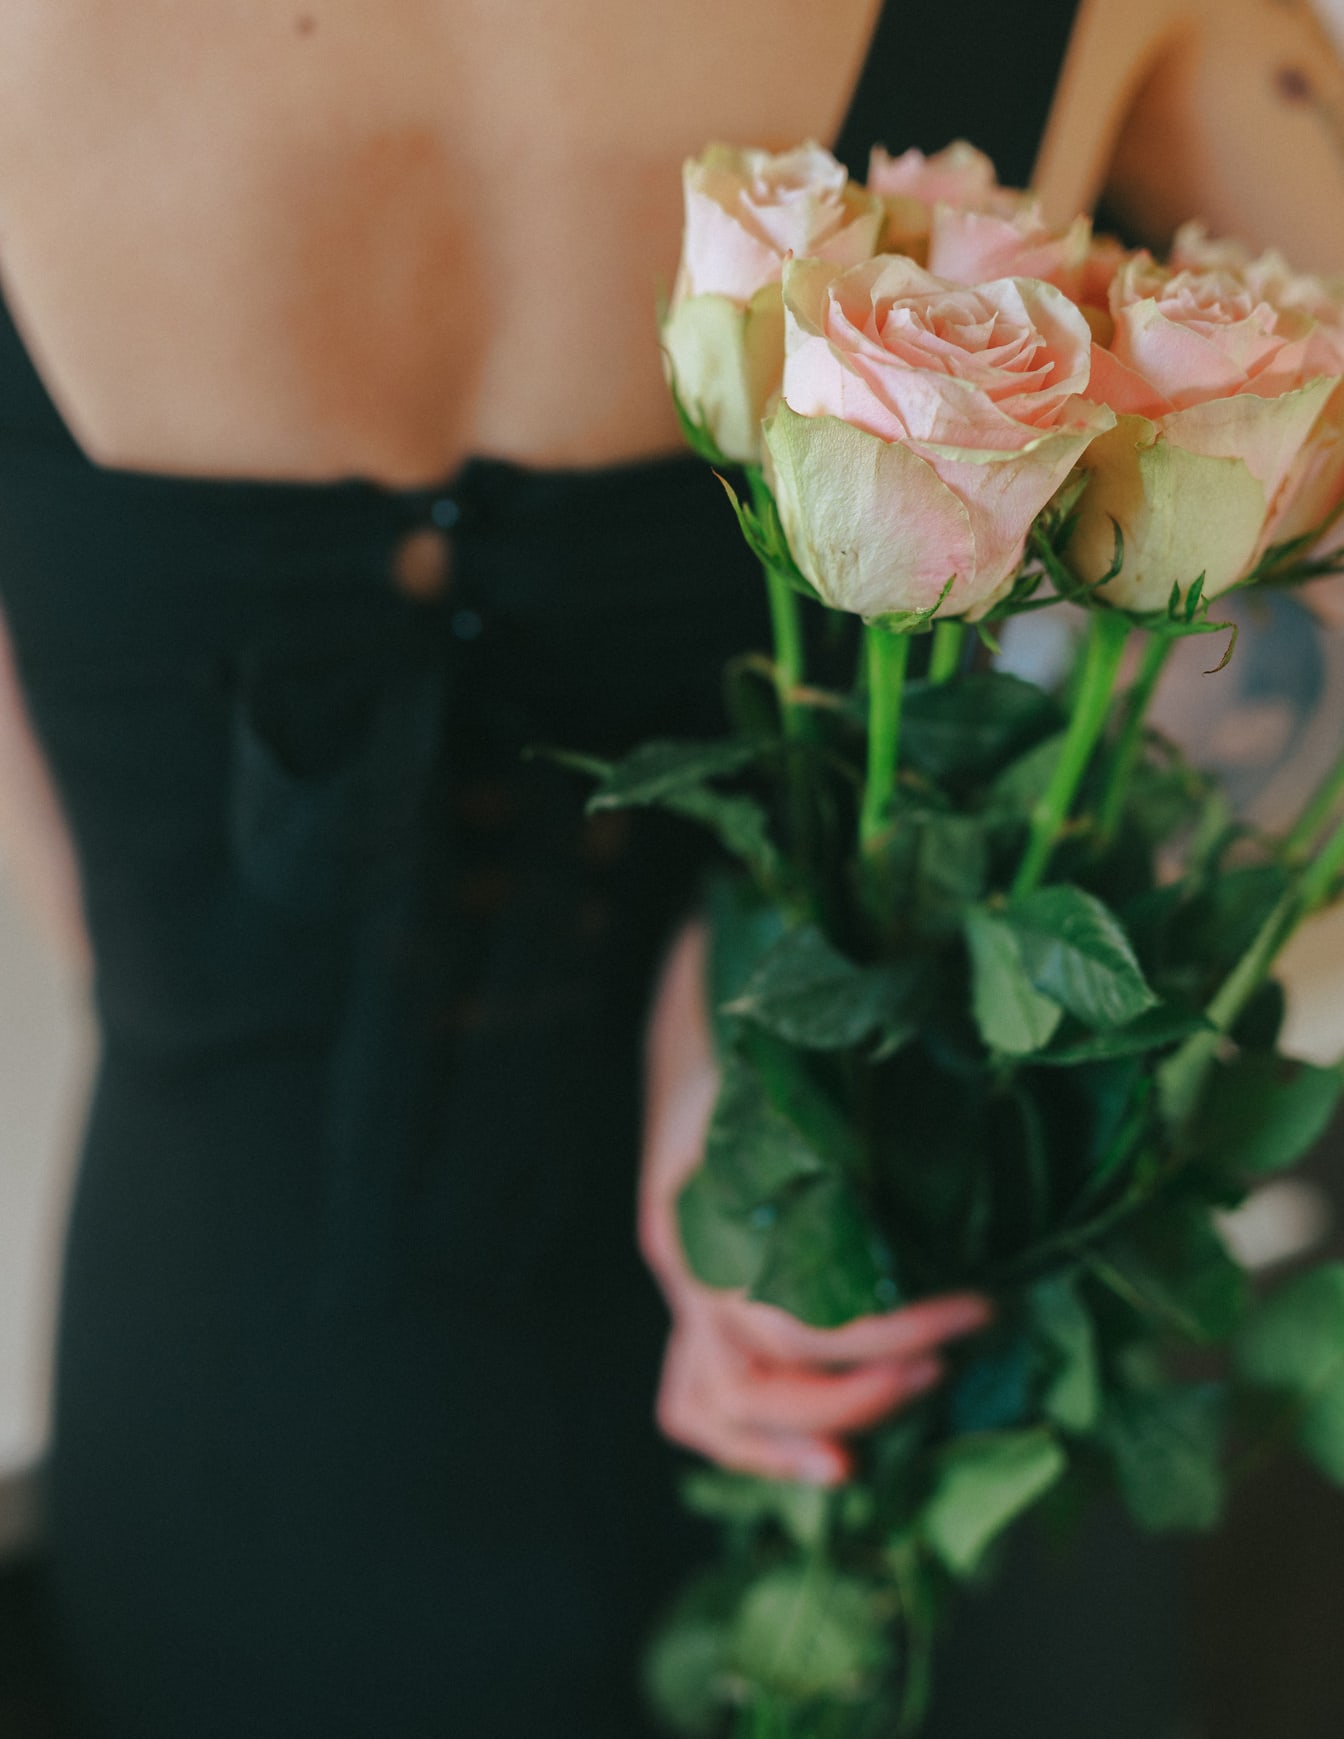 鮮やかなピンクのバラの花束を背負った女性